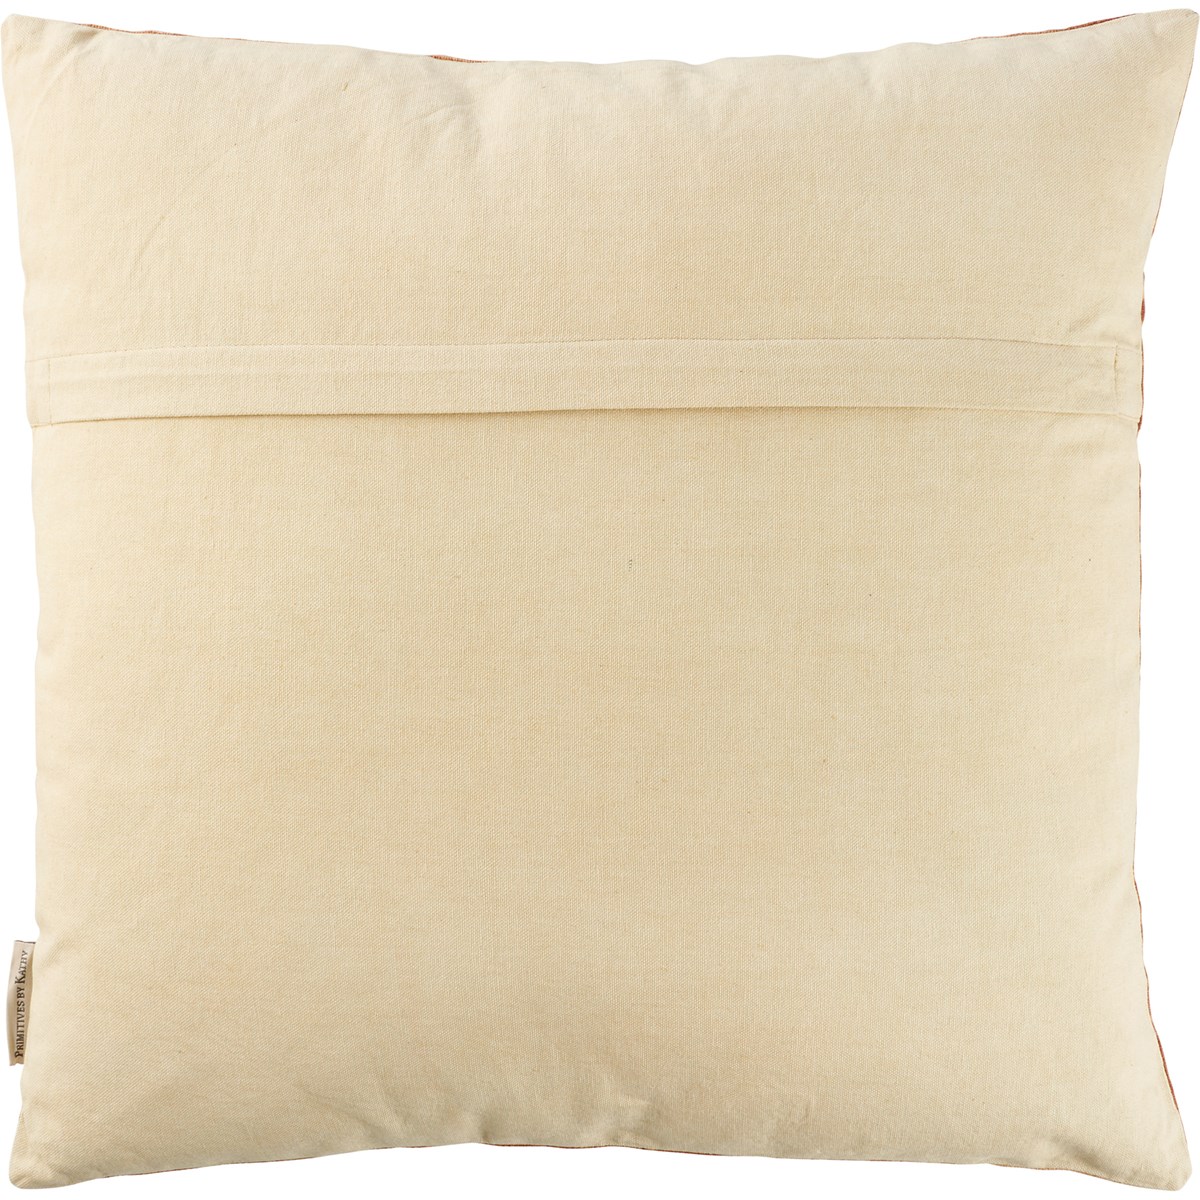 Sienna Tribal Pillow - Cotton, Zipper